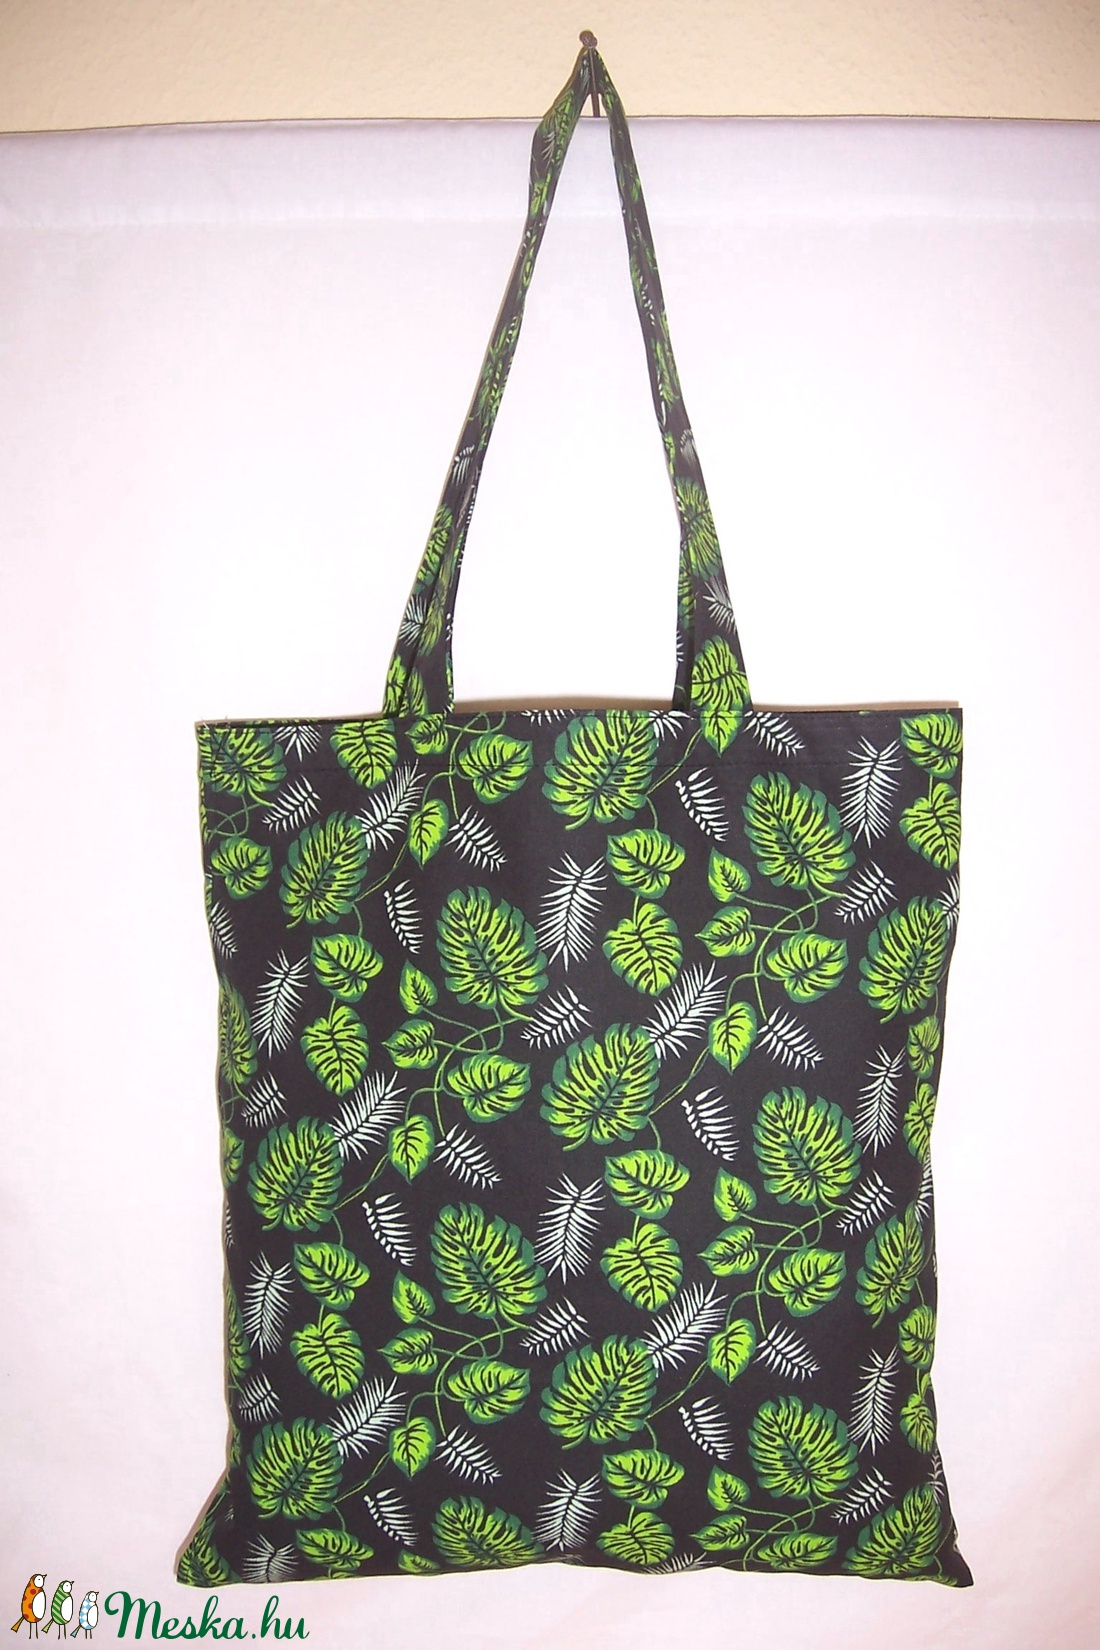  Zöld levél mintás táska fekete  - táska & tok - bevásárlás & shopper táska - shopper, textiltáska, szatyor - Meska.hu